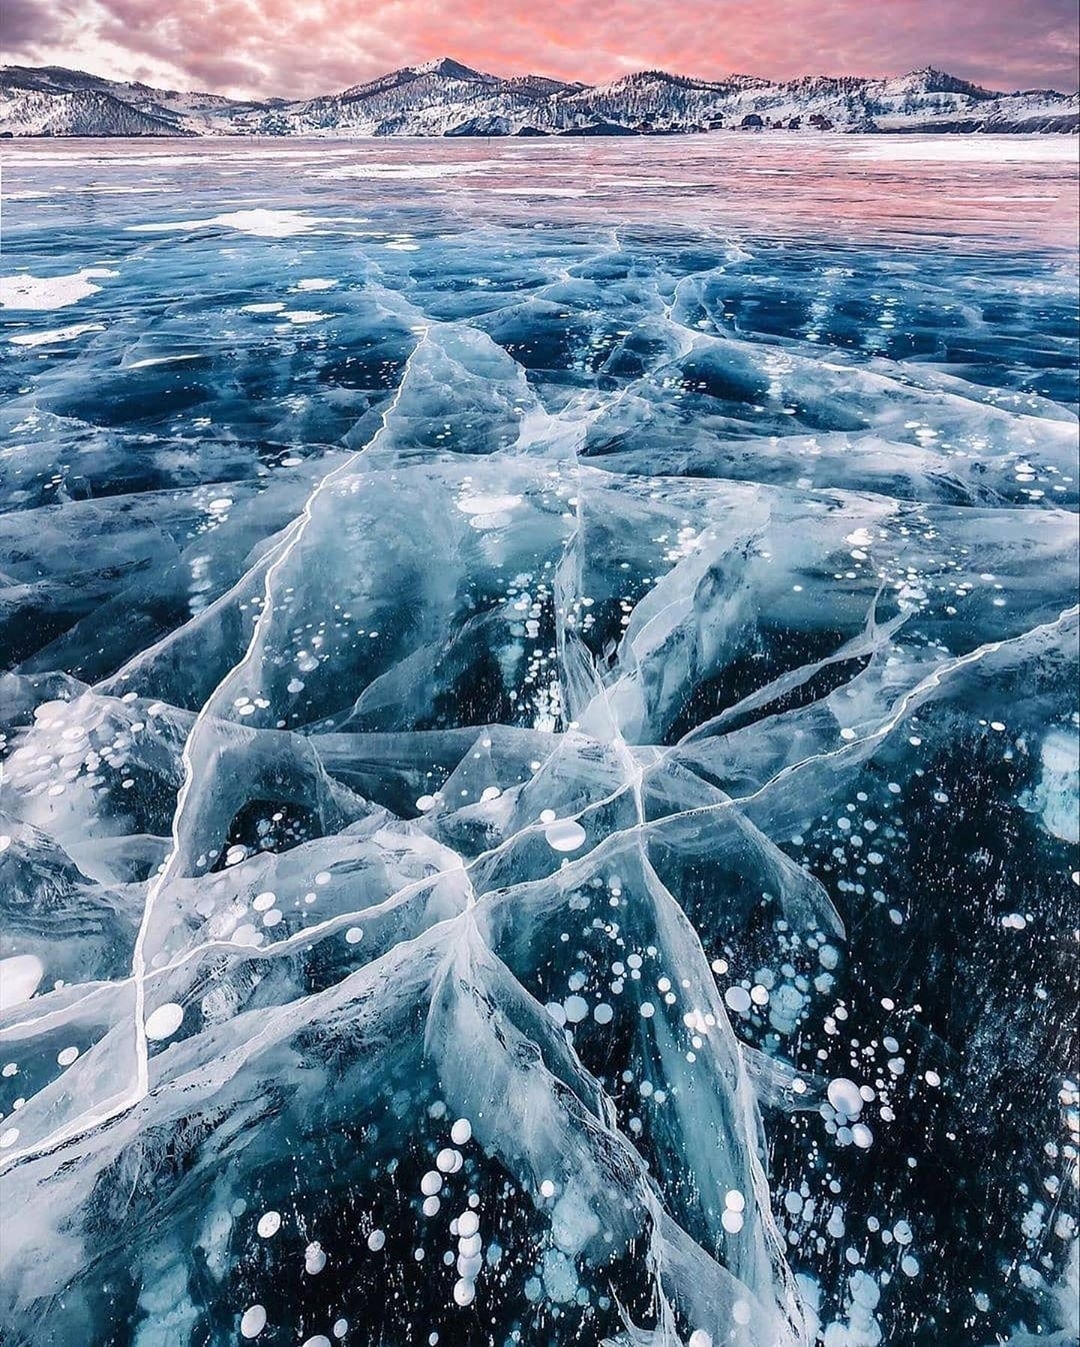 Сеть спортивных магазинов Кант - Байкал - озеро удивительное и уникальное, но то каким его, закованным во льдах, увидела фотохудожник Кристина Макеева @hobopeeba — совершенно невероятно.
⠀
 А вы были...